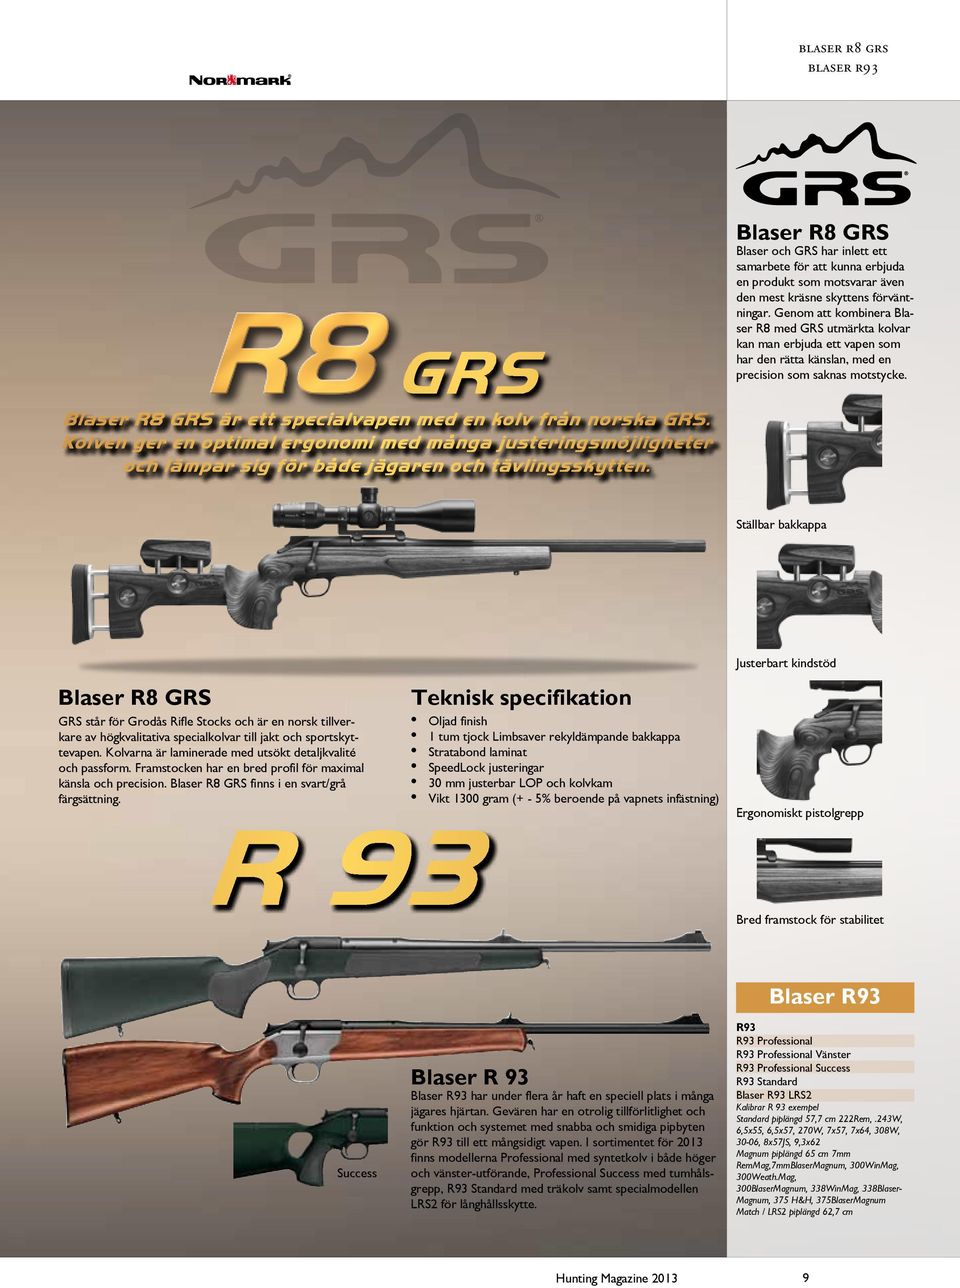 Blaser R8 GRS är ett specialvapen med en kolv från norska GRS. Kolven ger en optimal ergonomi med många justeringsmöjligheter och lämpar sig för både jägaren och tävlingsskytten.